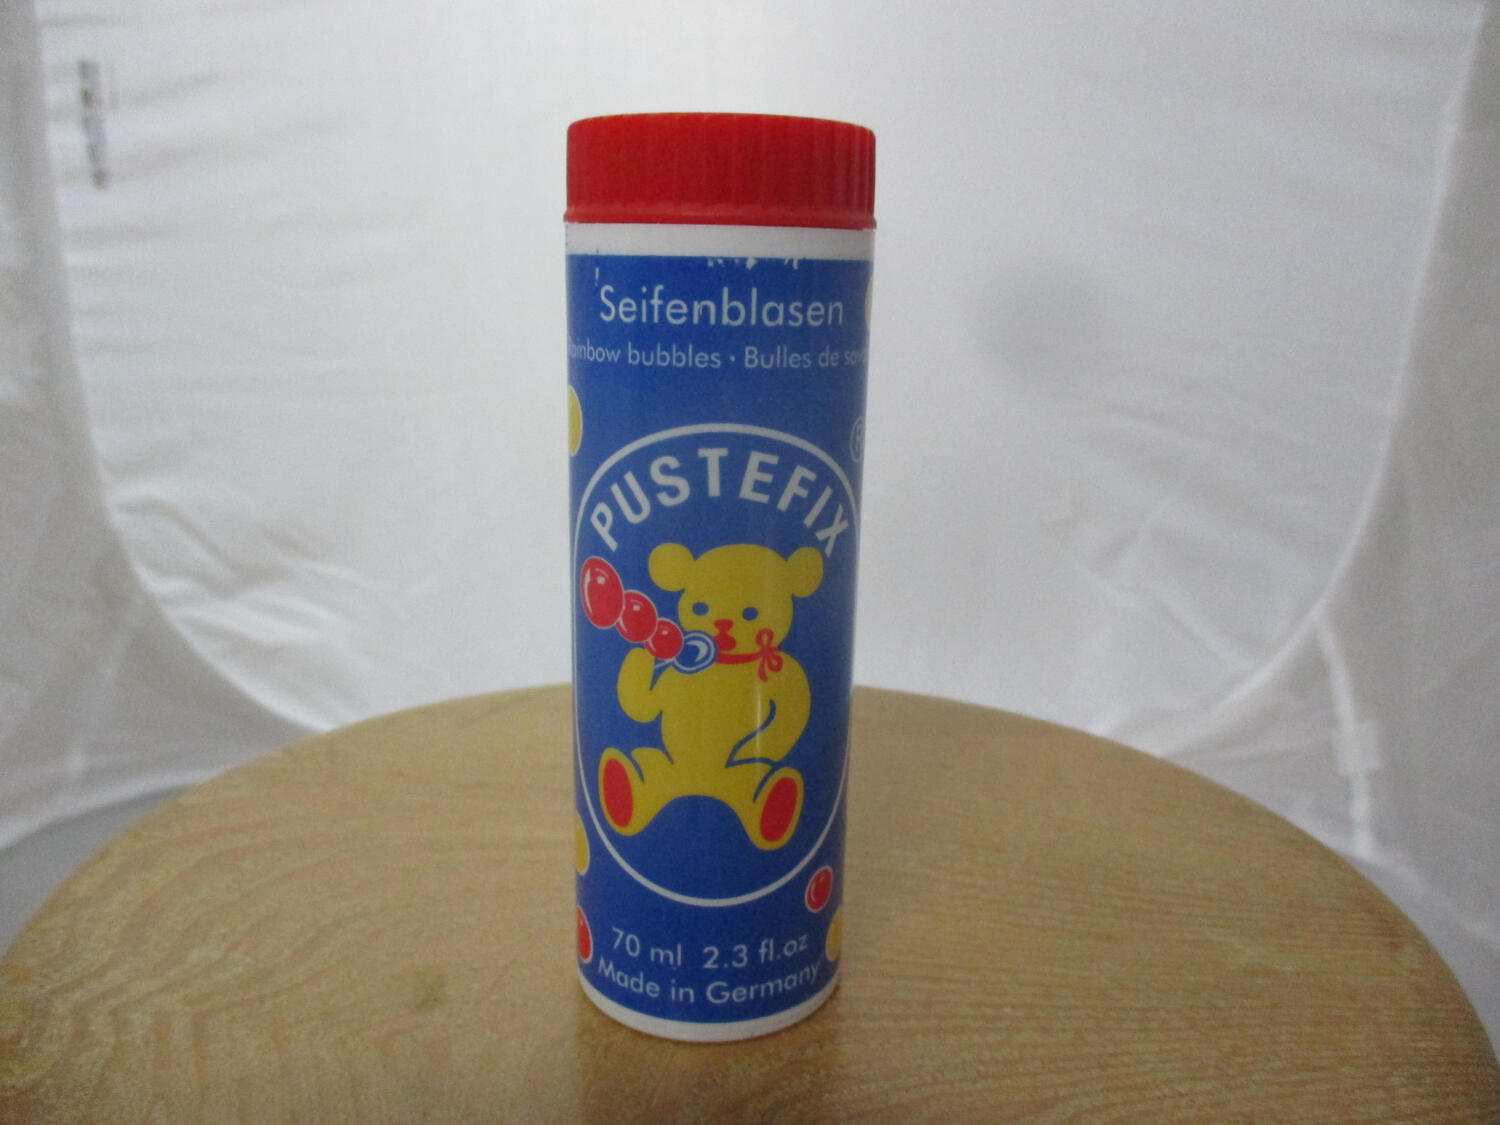 PUSTEFIX GmbH Pustefix: Seifenblasen 70 ml | Bonn